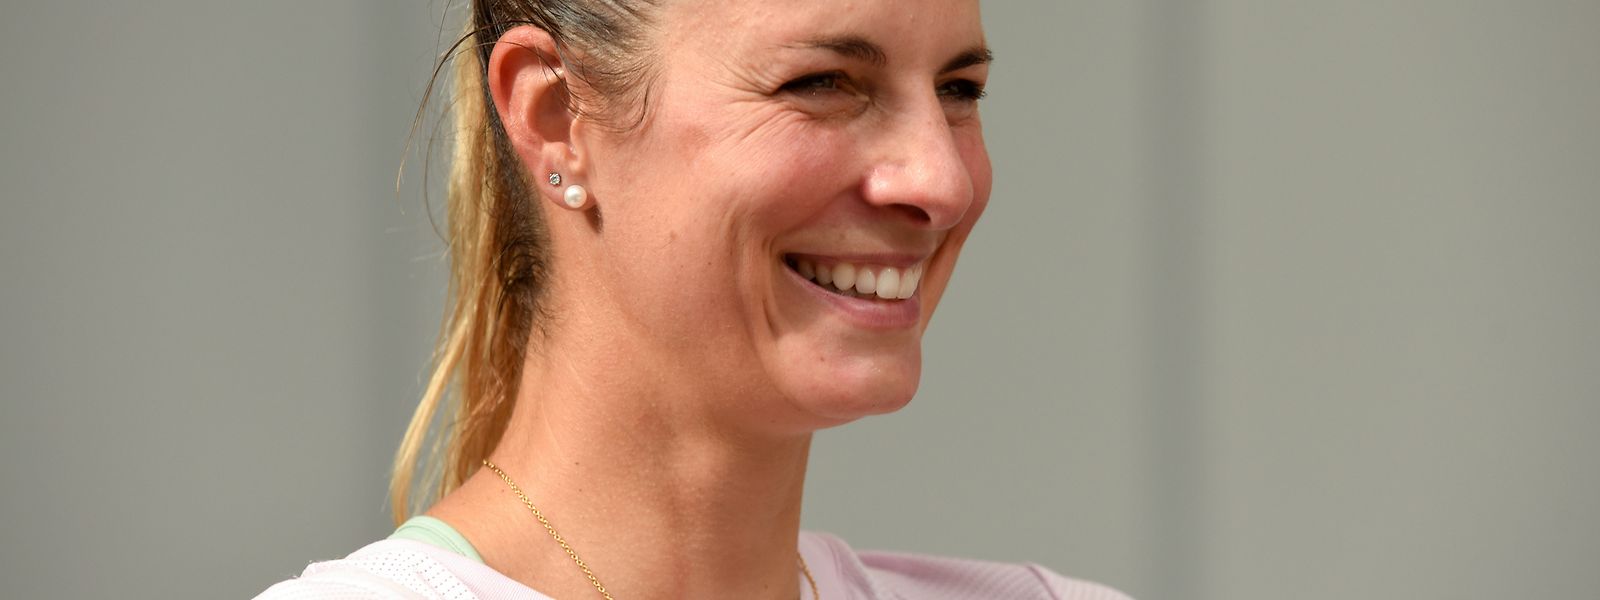 Mandy Minella kann auf viele positive Momente beim WTA-Turnier in Kockelscheuer zurückblicken.